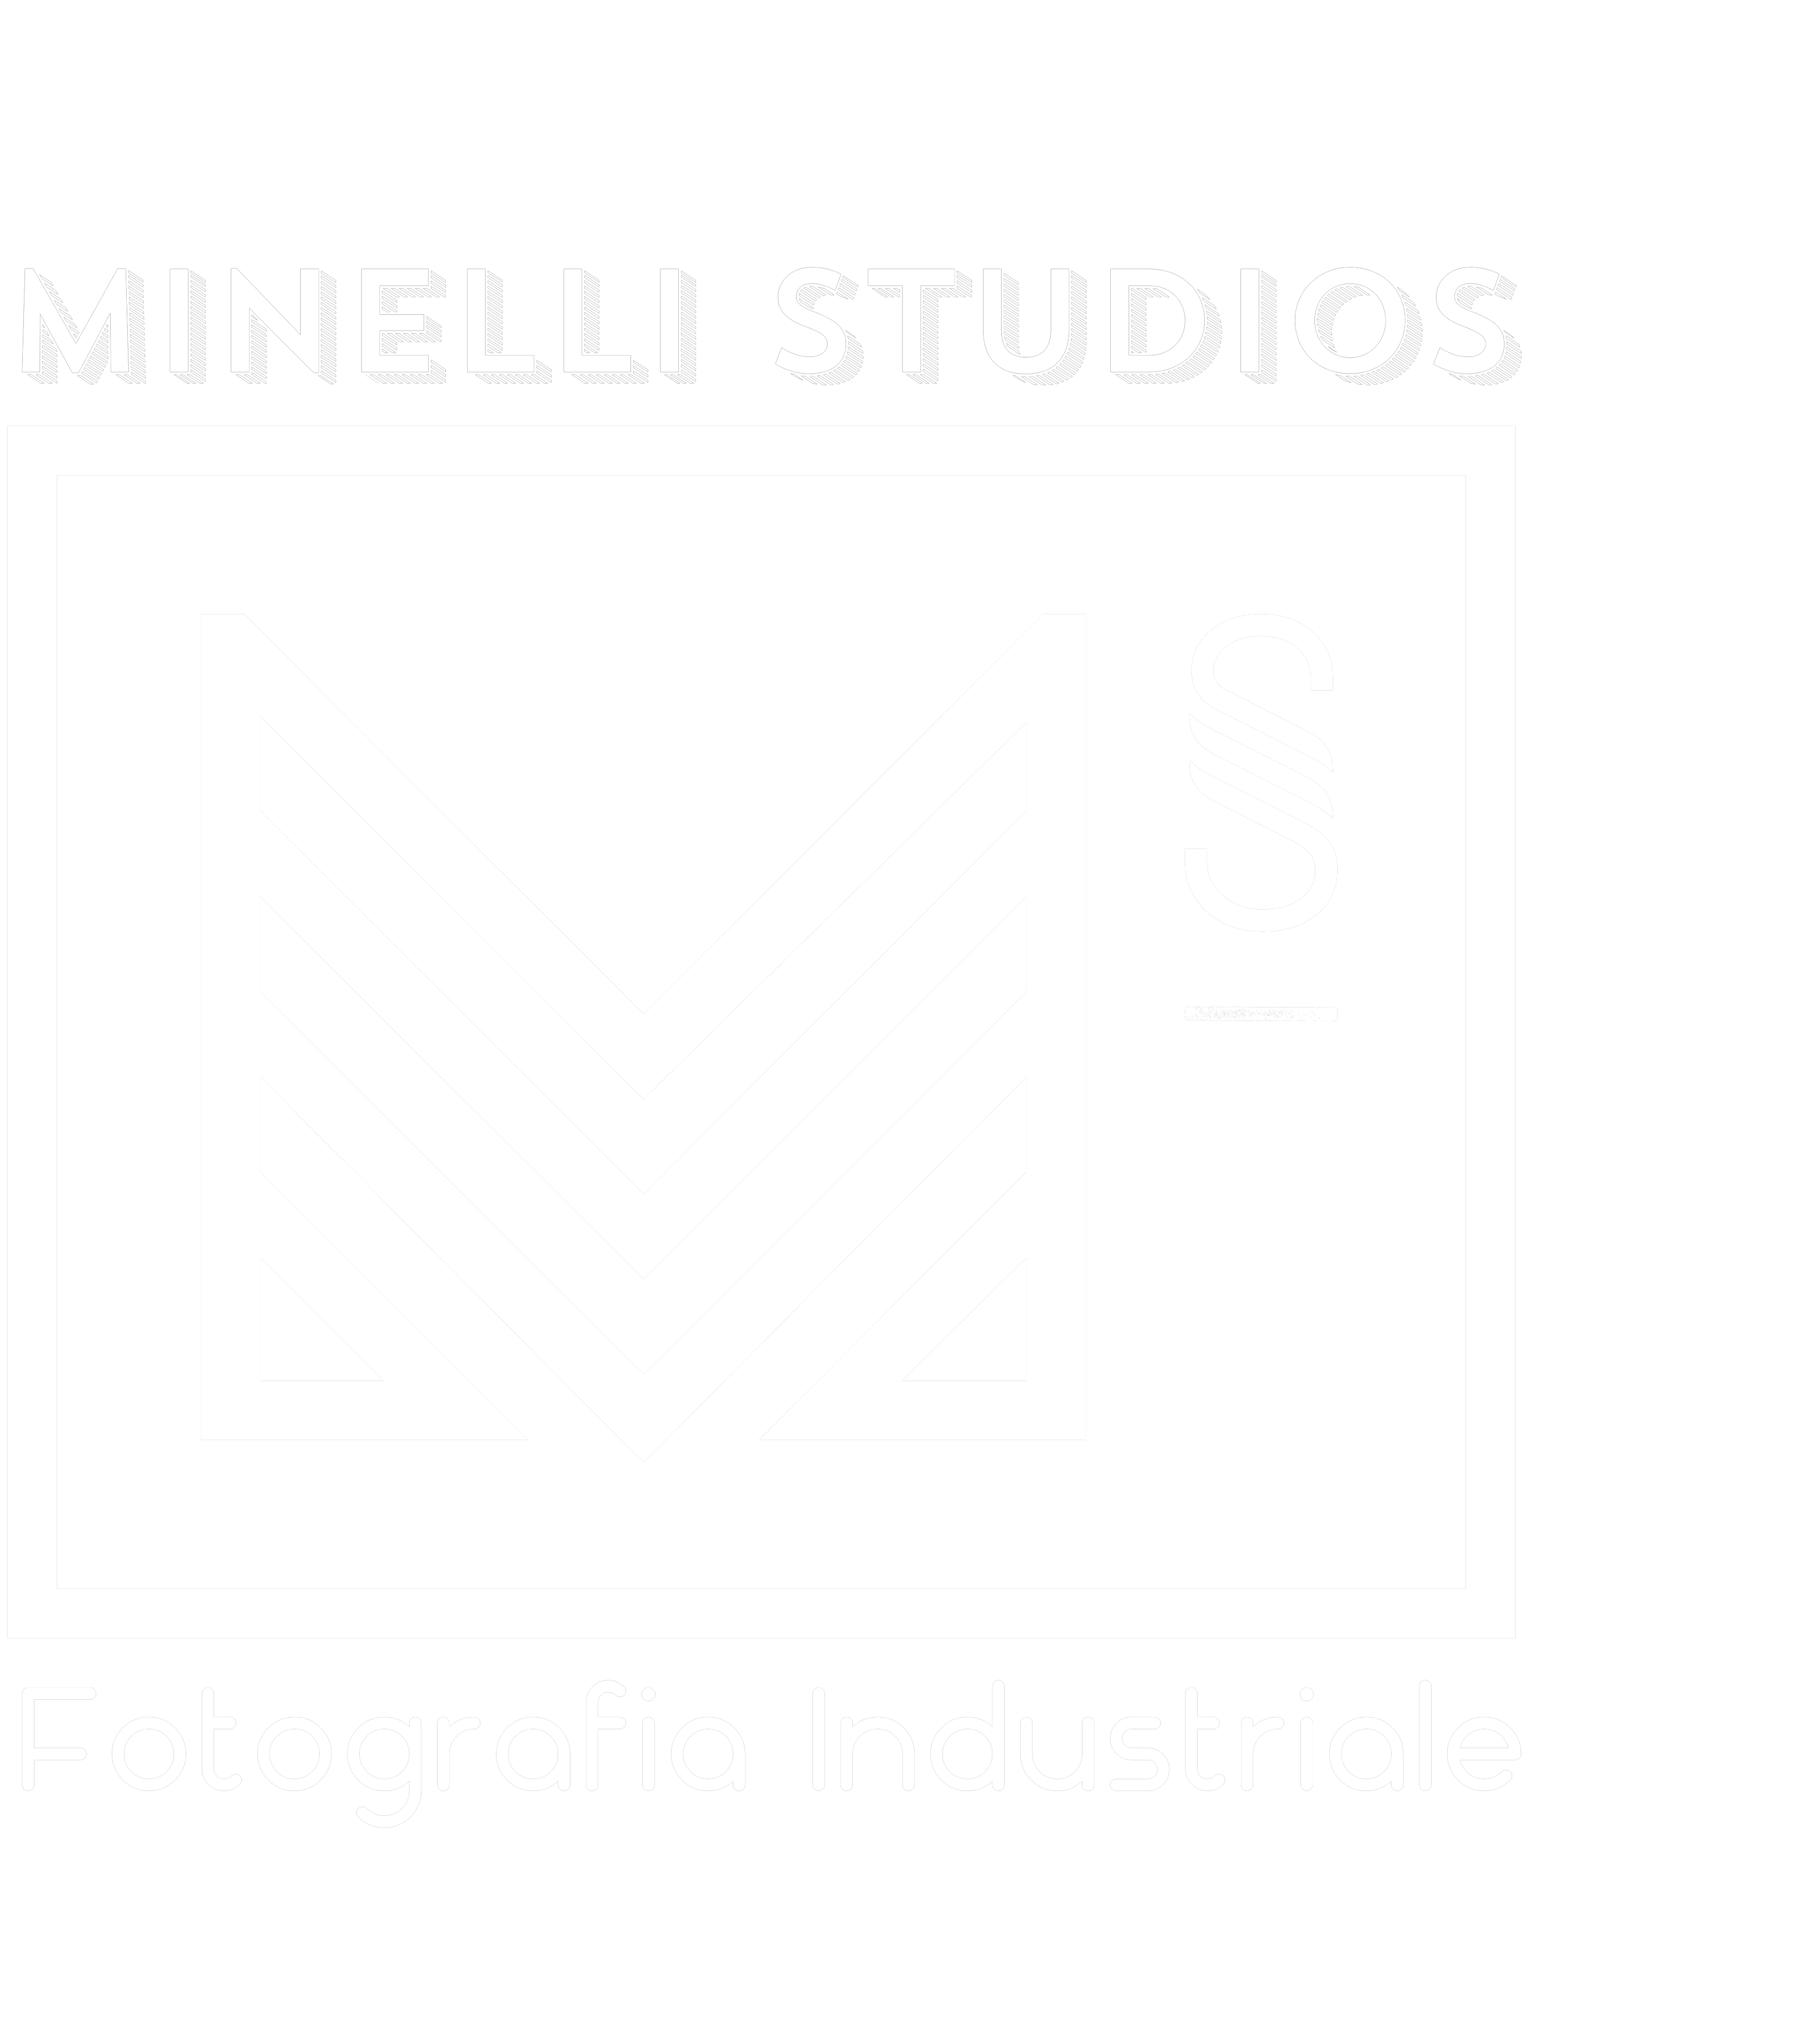 Minelli Sudios - Fotografo Industriale